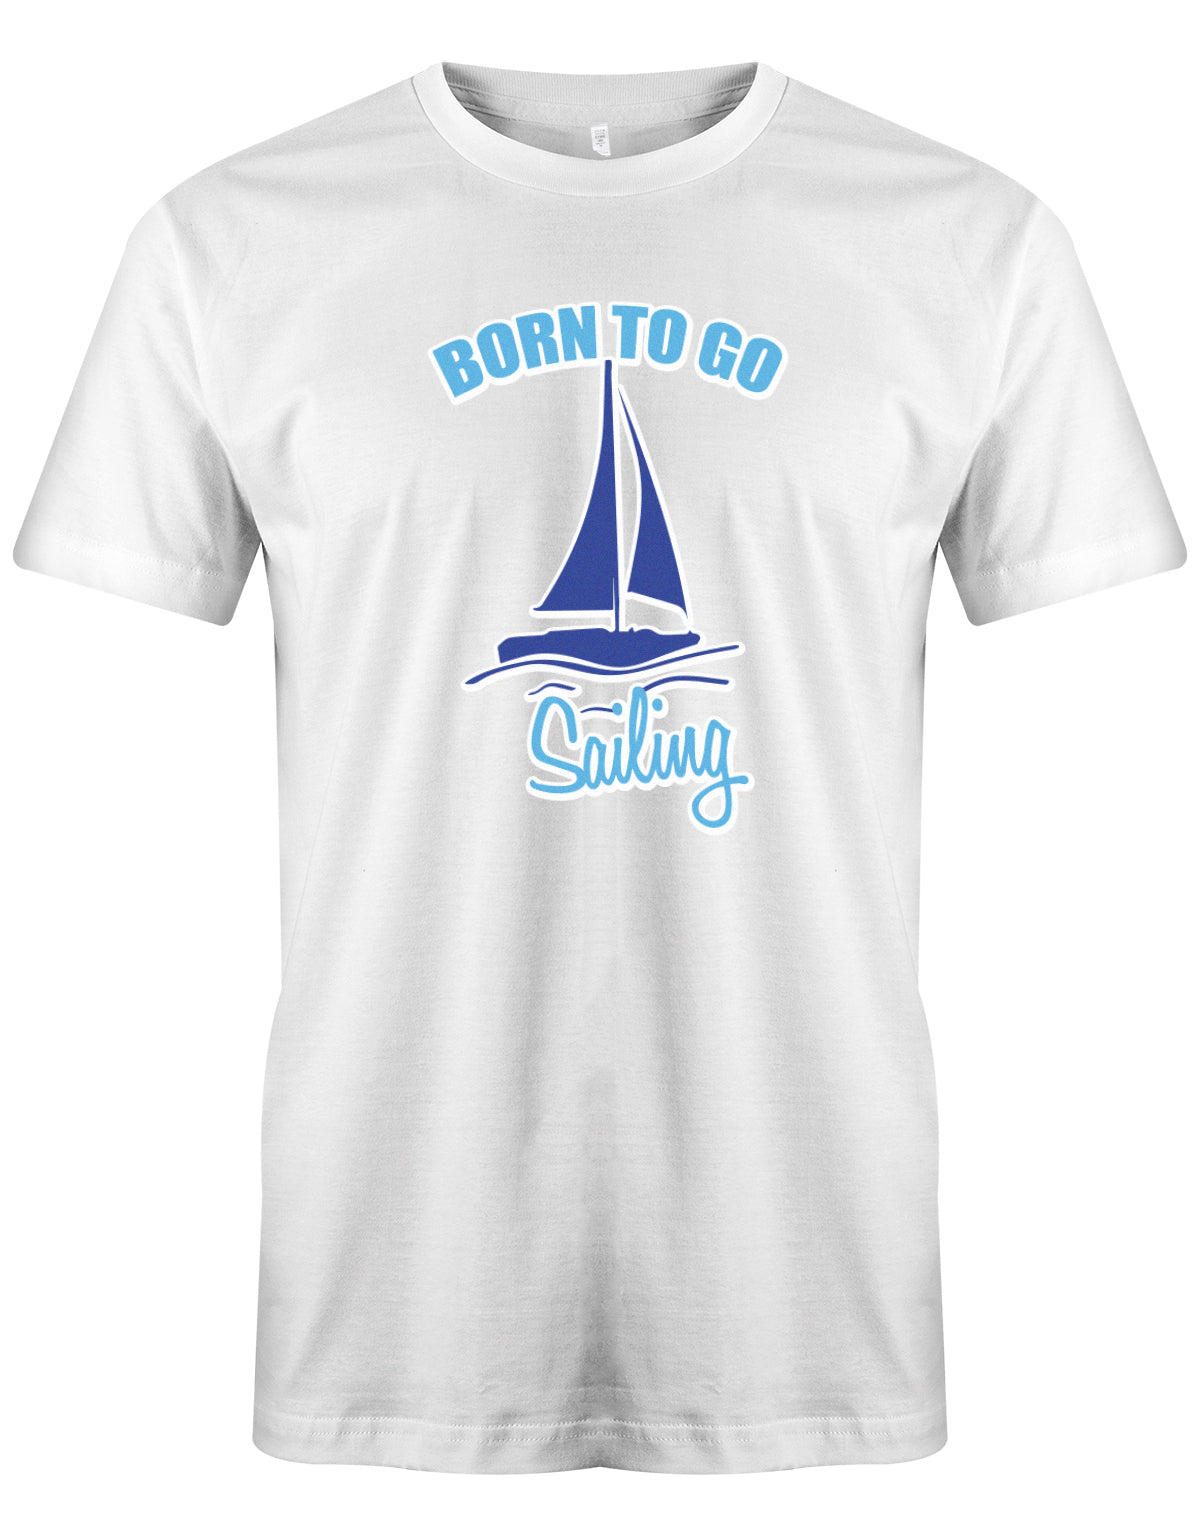 Das Segler t-shirt bedruckt mit "Born to go sailing - geboren um segeln zu gehen". Weiss